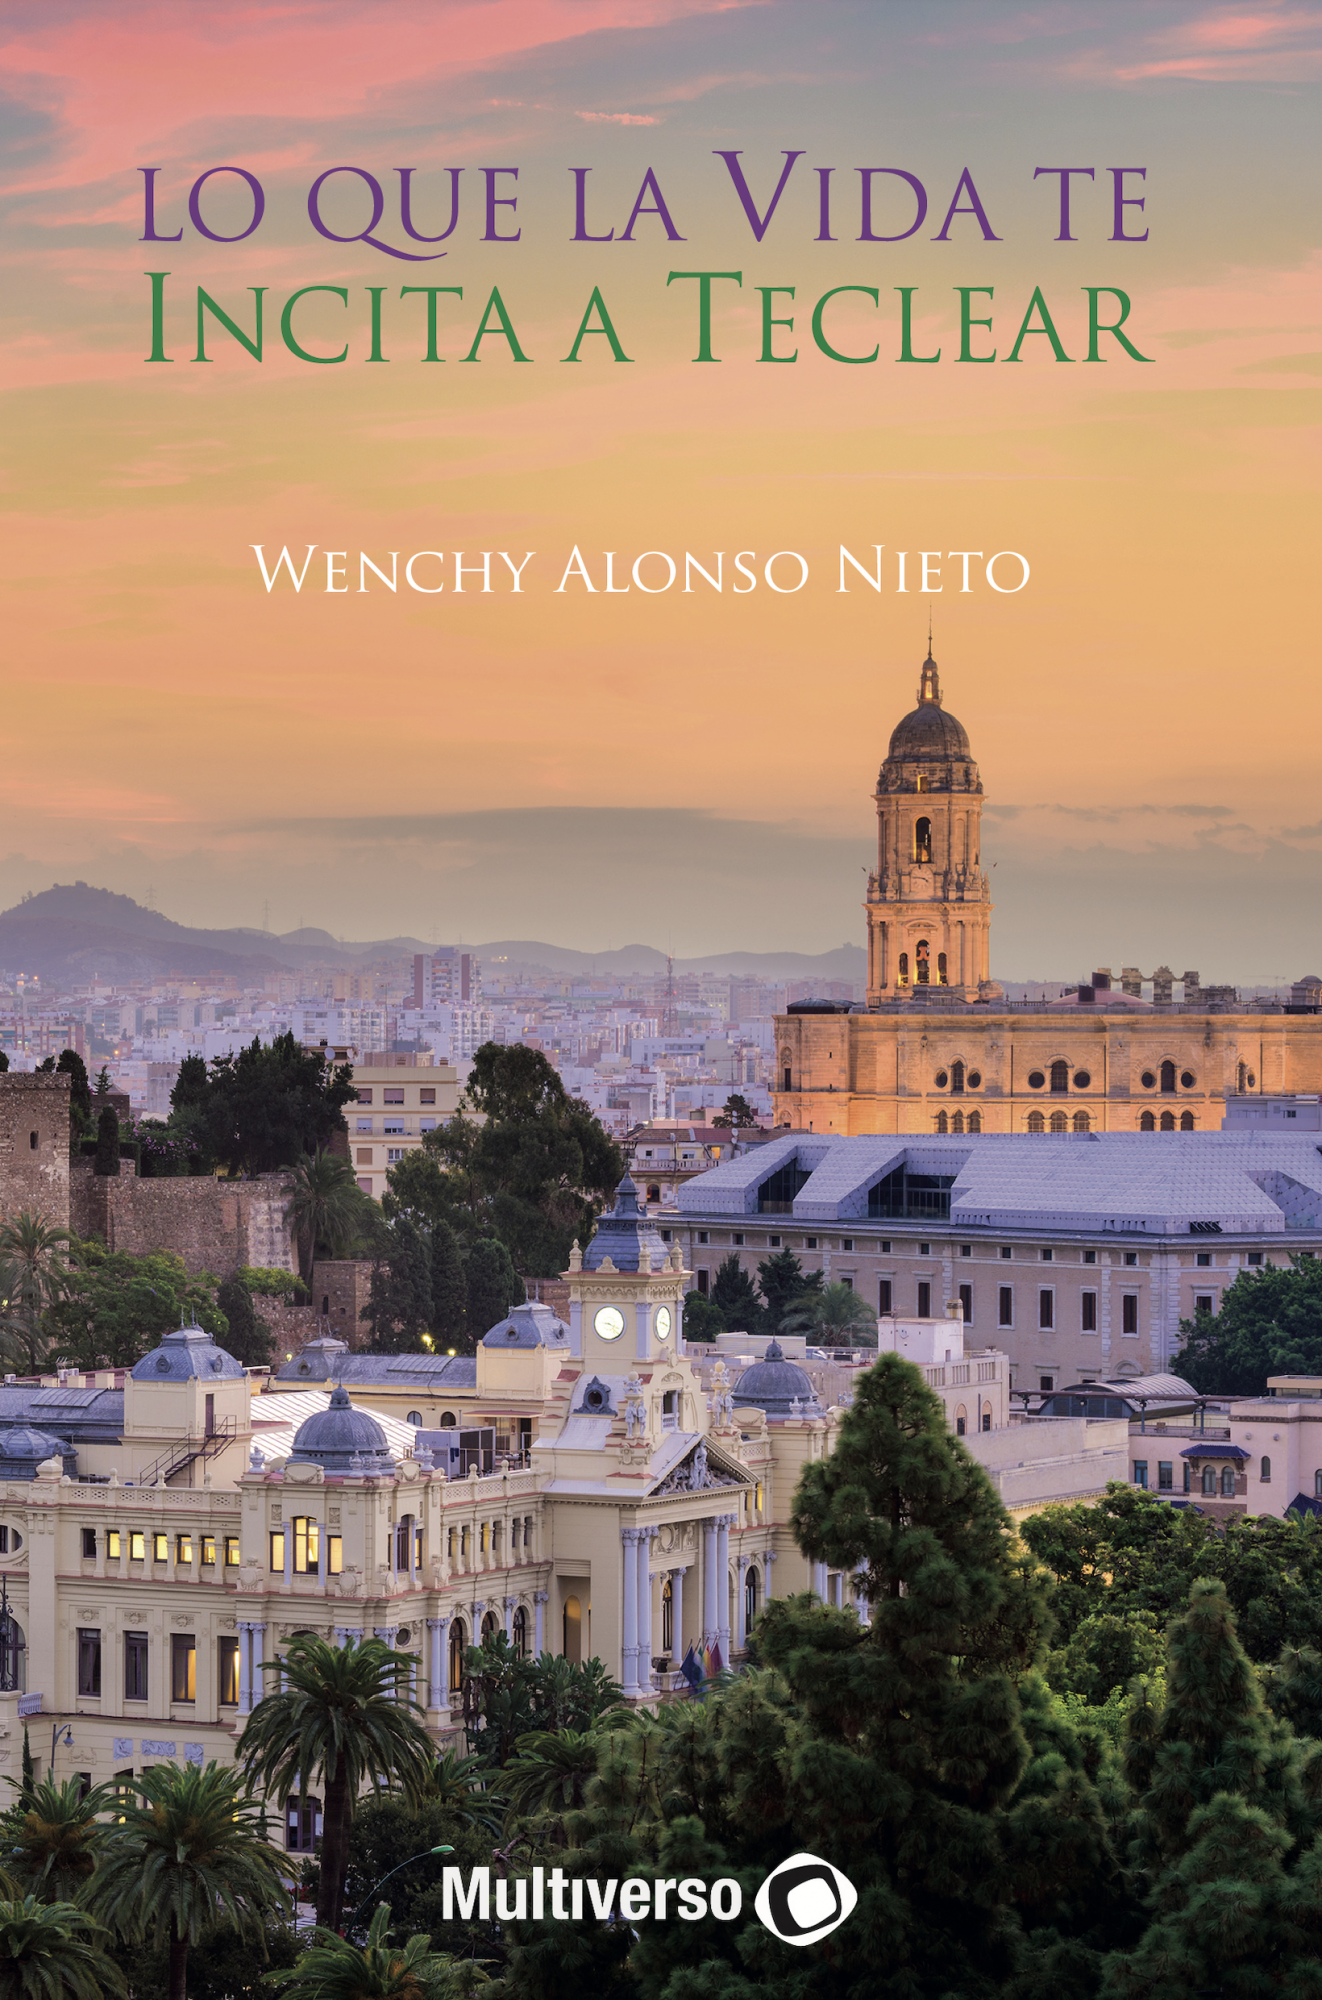 'Lo que la vida te incita a teclear', el nuevo libro de poemas de Wenchy Alonso Nieto